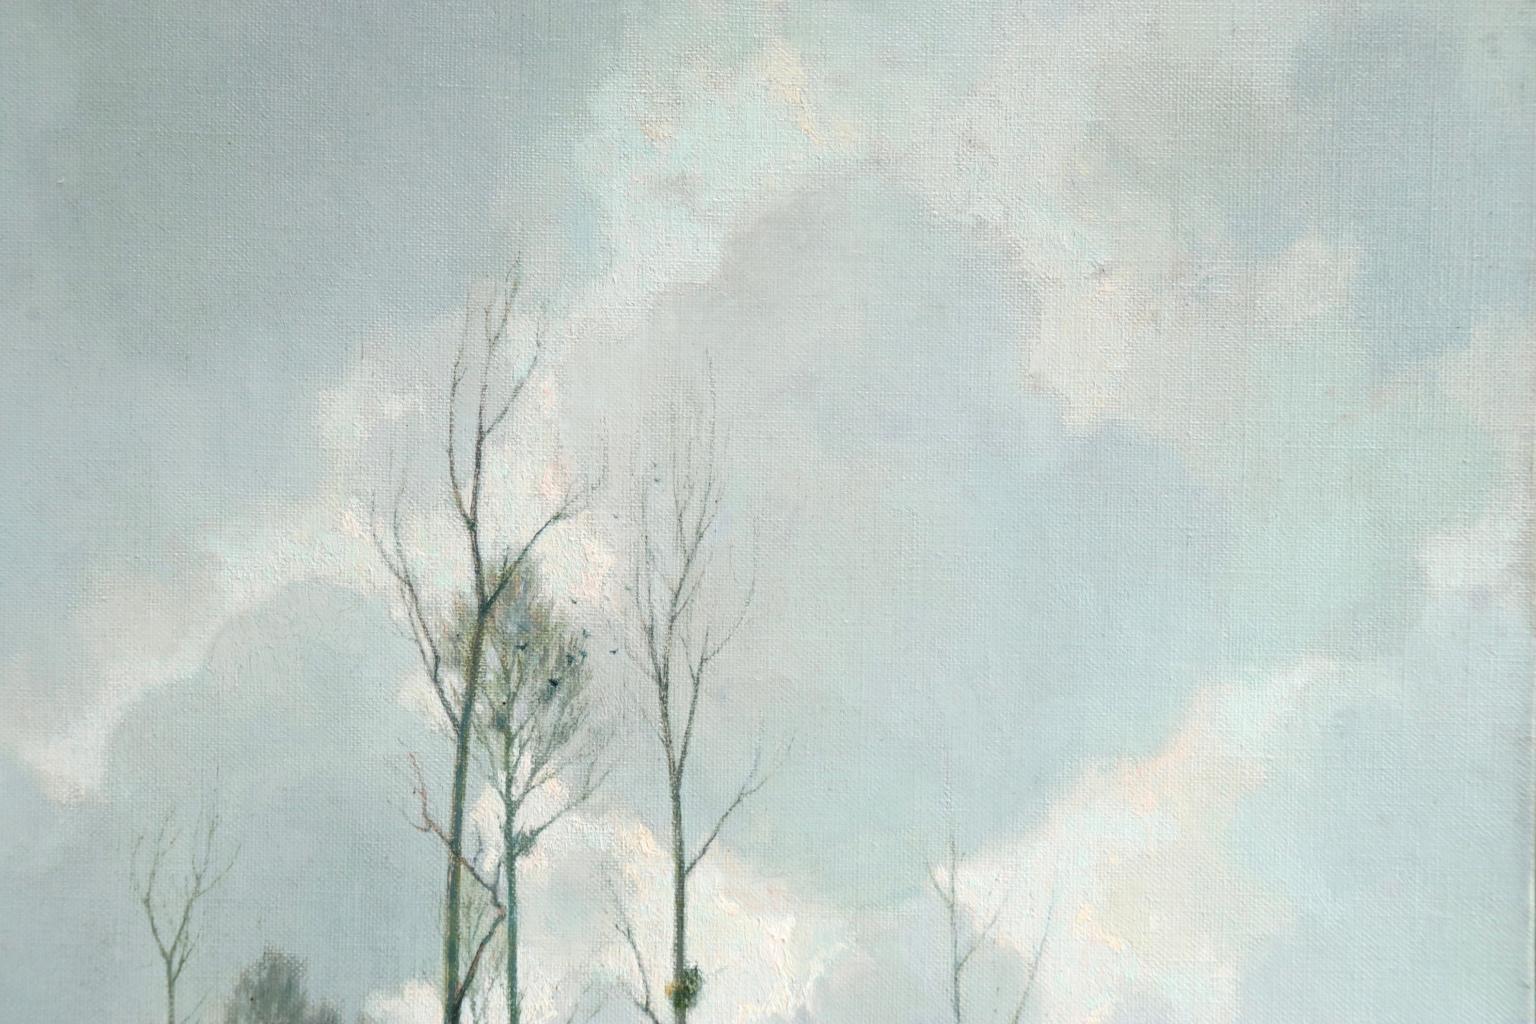 Bords d'Etang sur la Marne - Impressionist Oil, River in Landscape by A Jacob - Gray Figurative Painting by Alexandre Louis Jacob